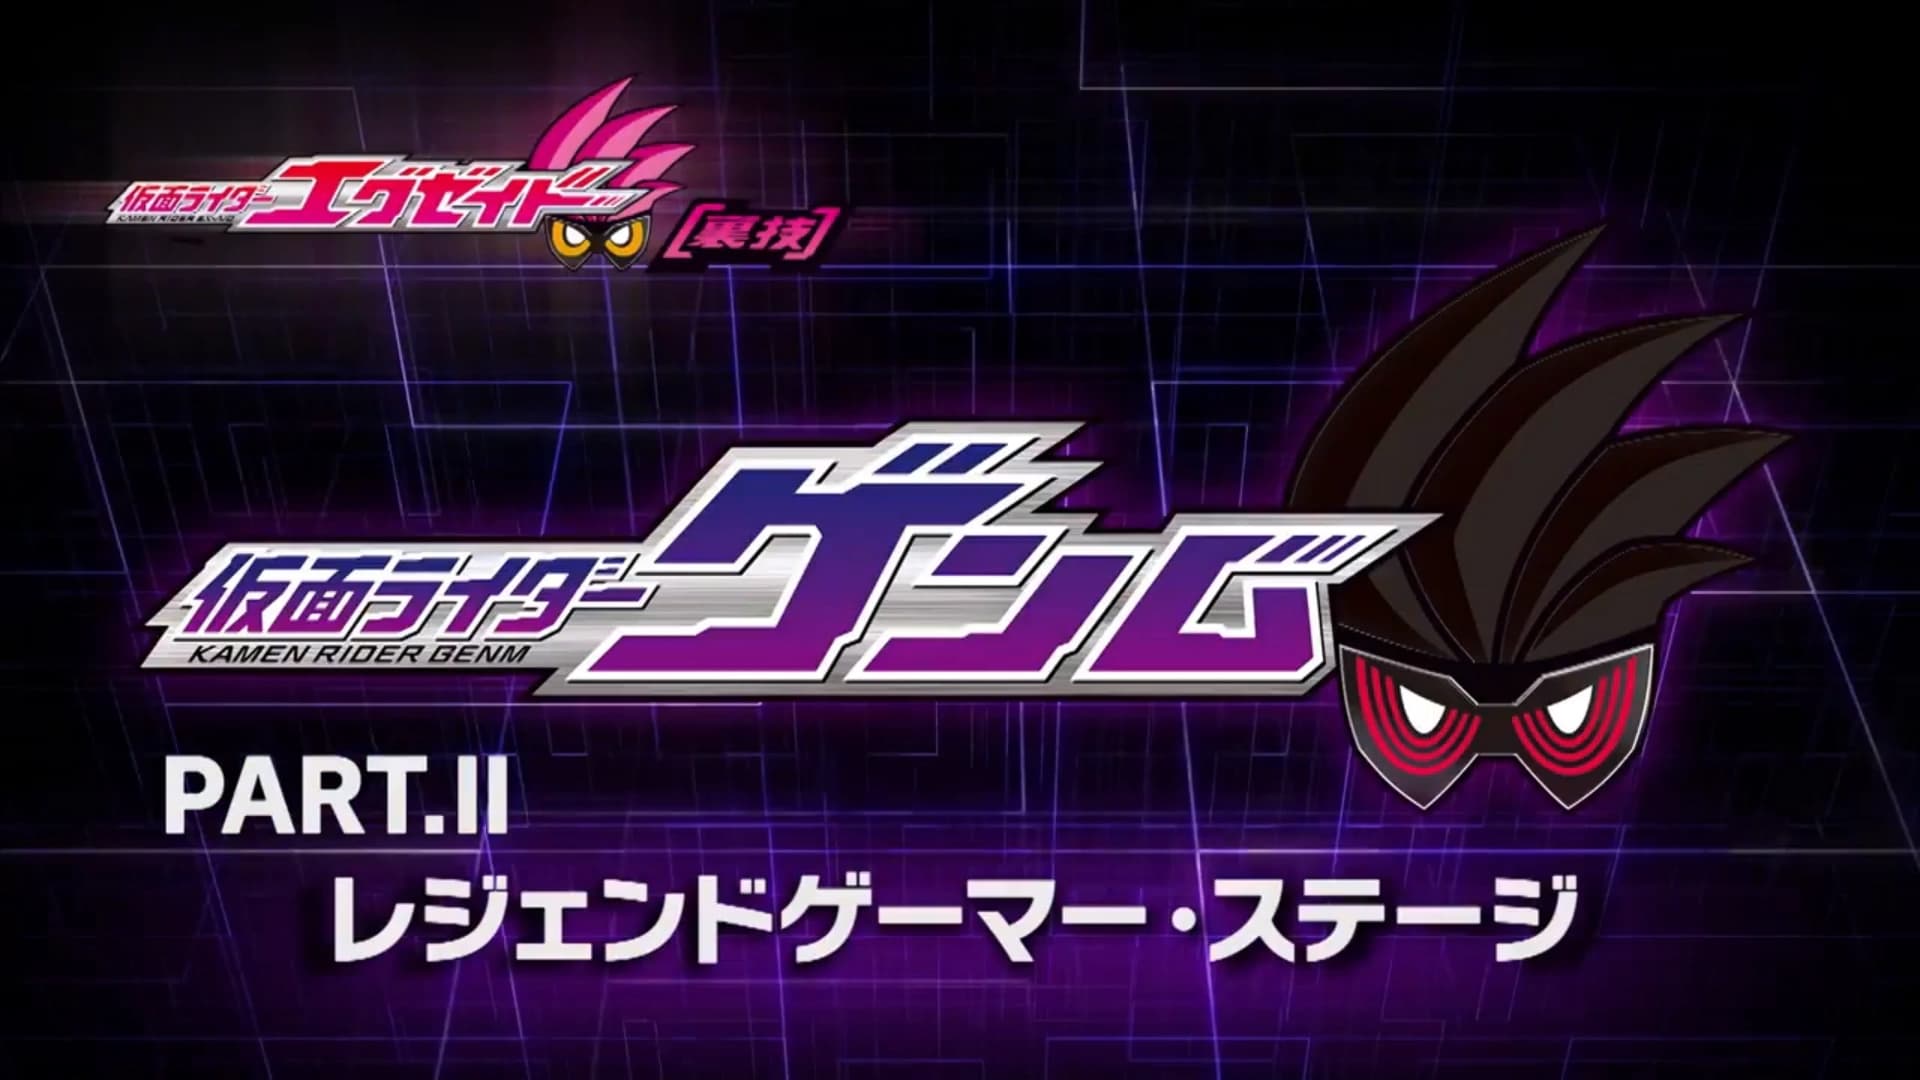 Kamen Rider Season 0 :Episode 7  Kamen Rider Ex-Aid [Tricks] - Kamen Rider Genm - Part. II: Legend Gamer Stage